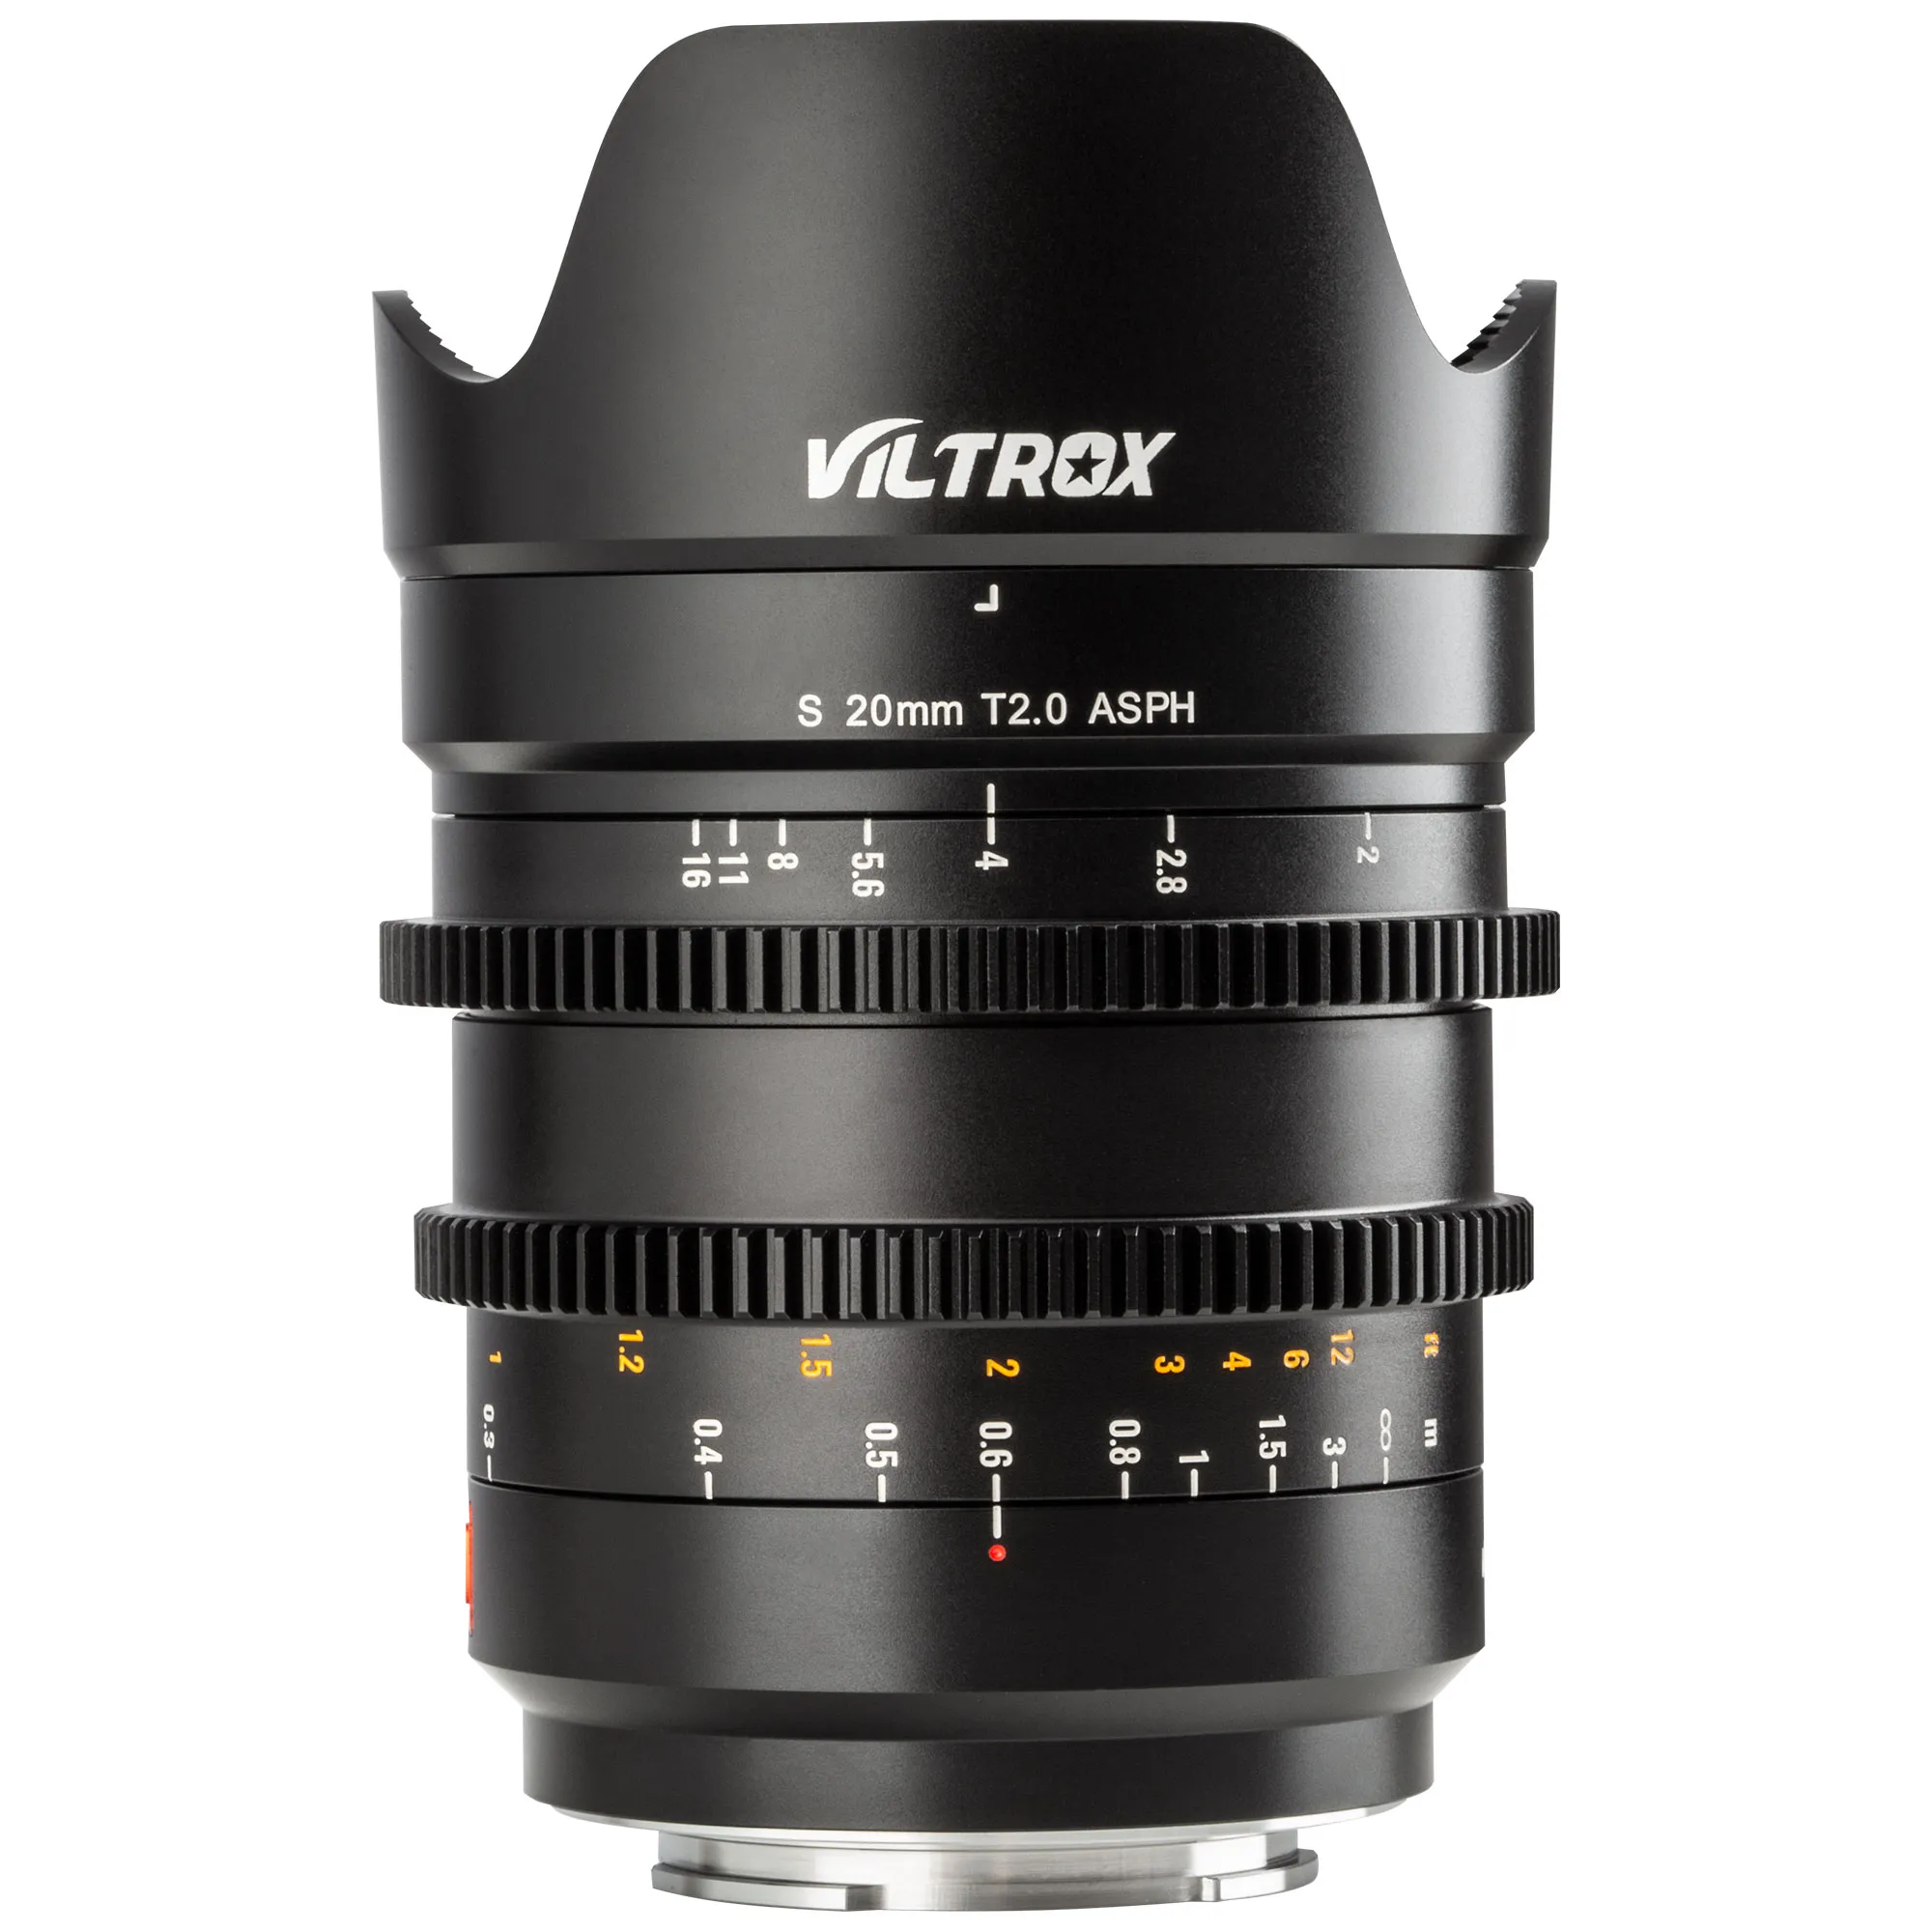 Viltrox S 20mm T2.0 ASPH Full-Full Full Focus Prime Lenses for L mount مع فتحة كبيرة